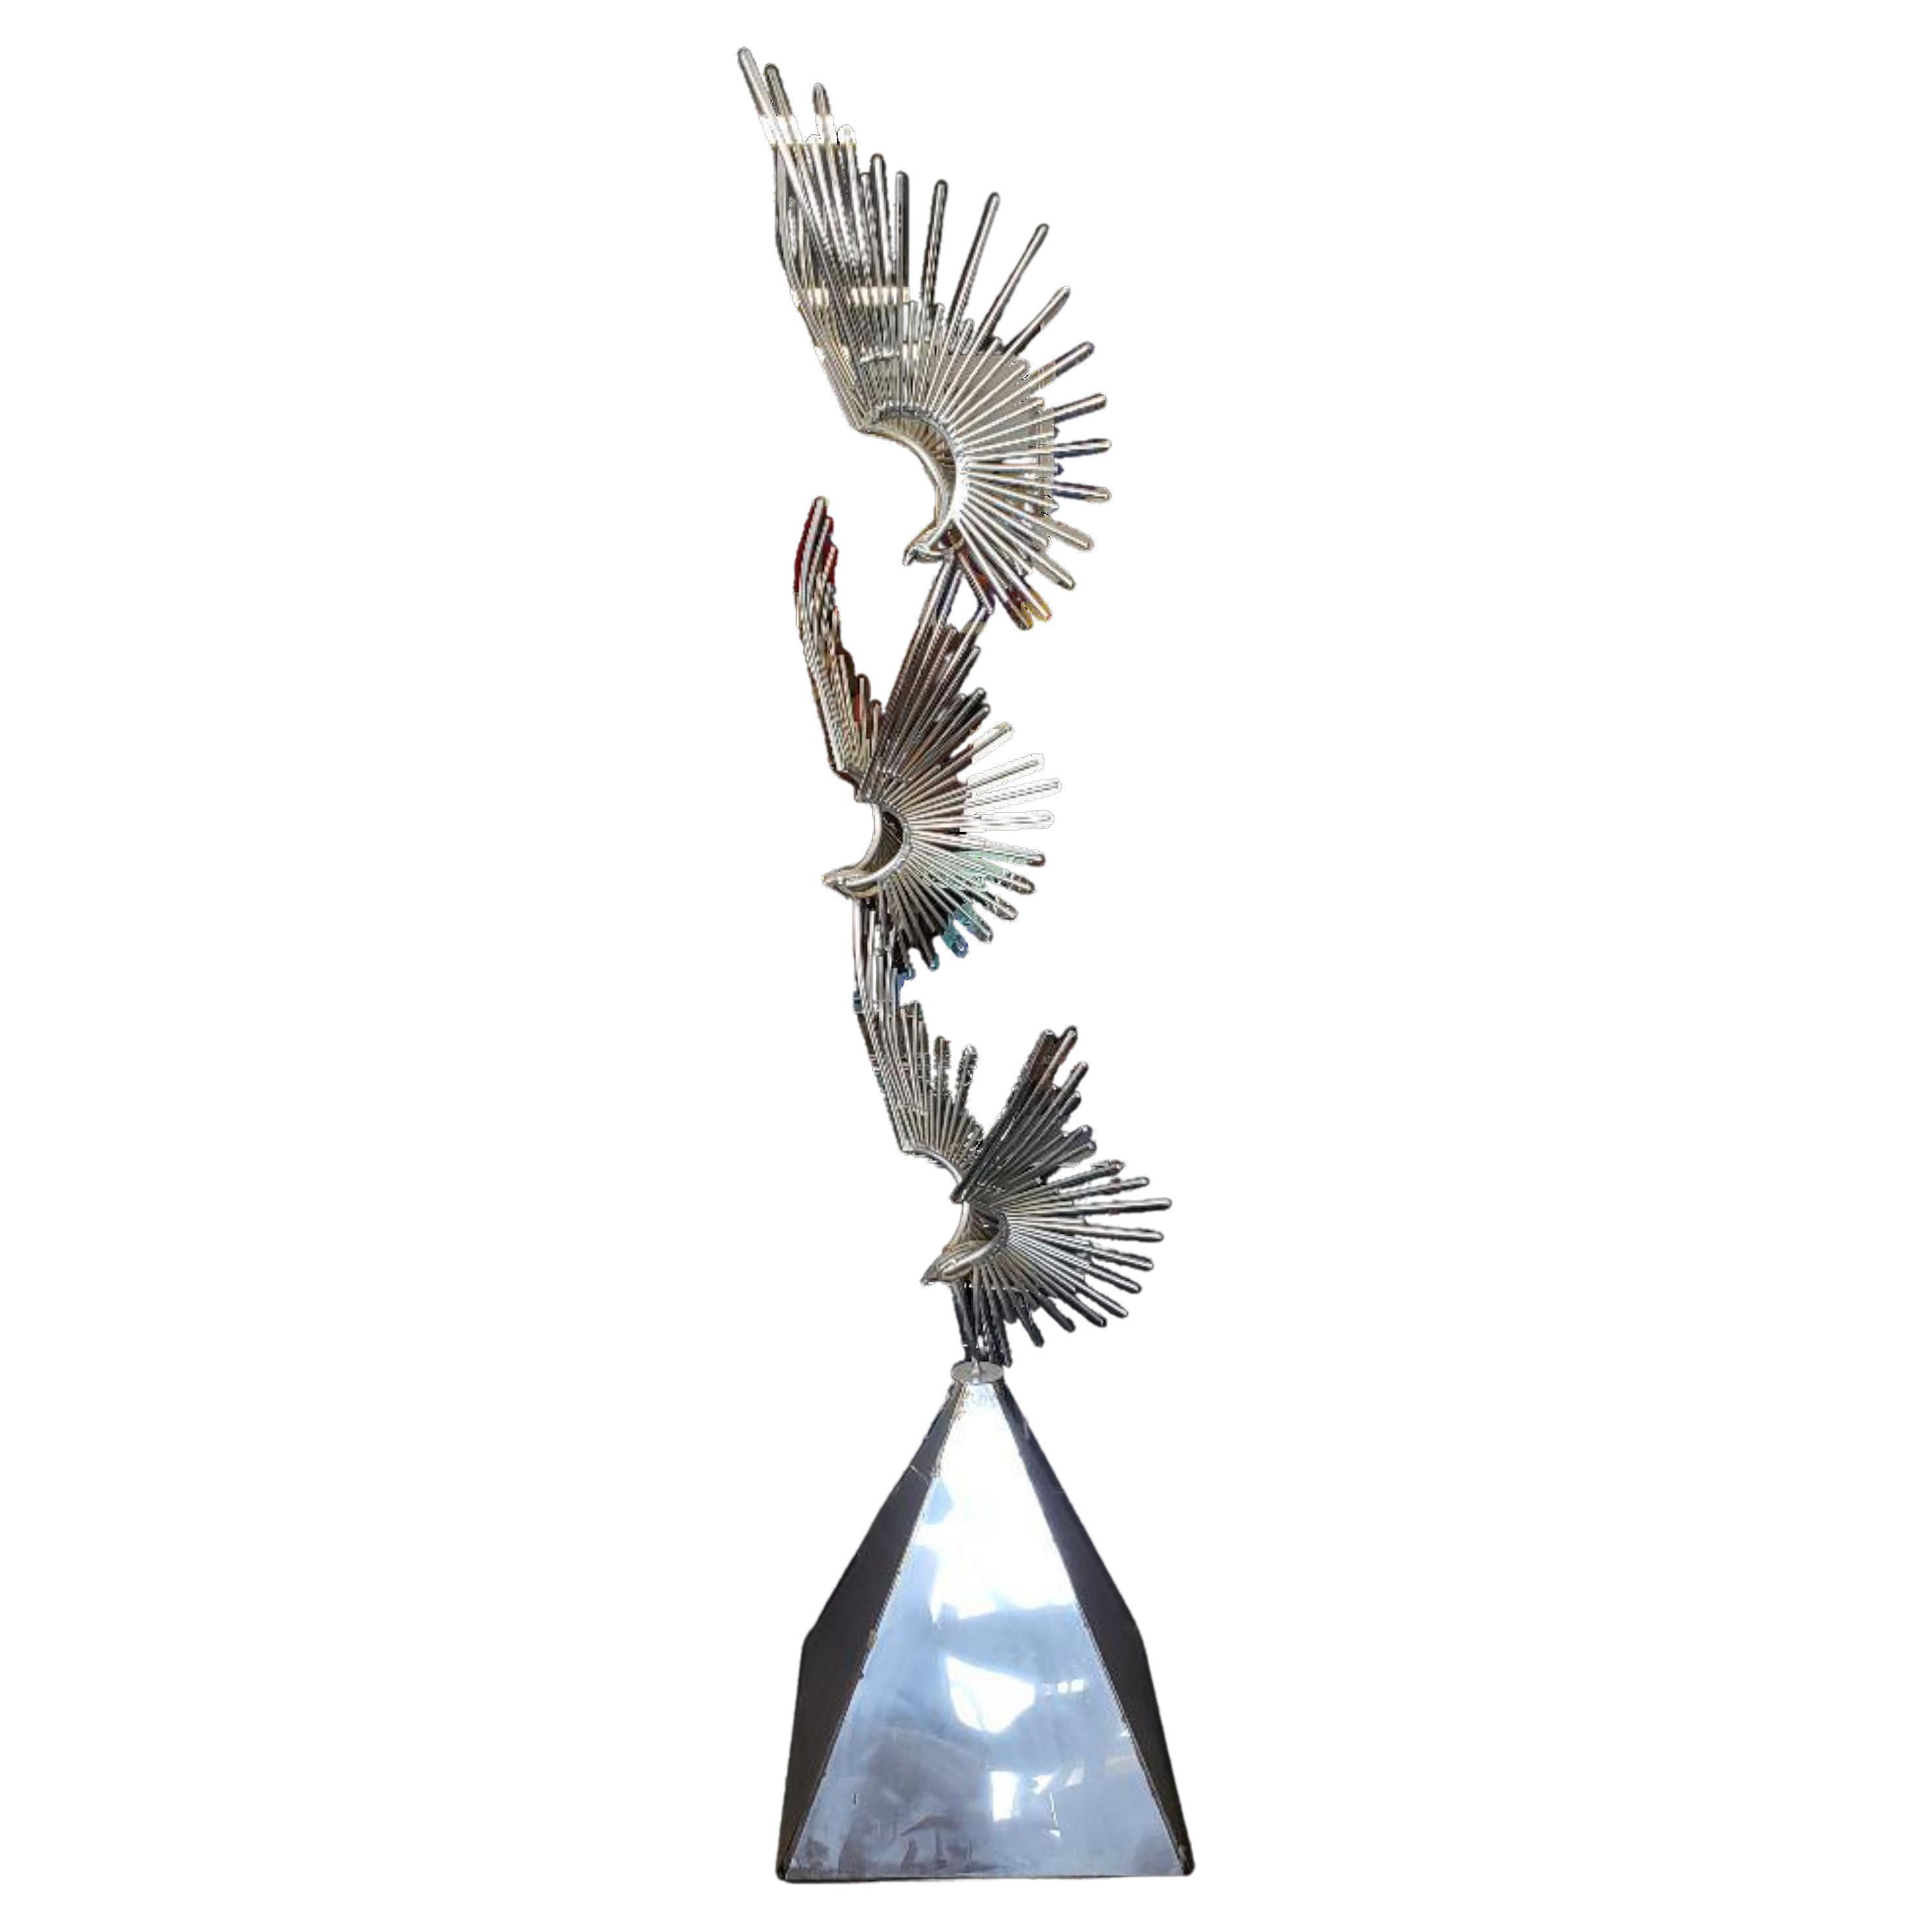 Sculpture en métal chromé « Birds at Flight » de Curtis Jere avec base trapézoïdale